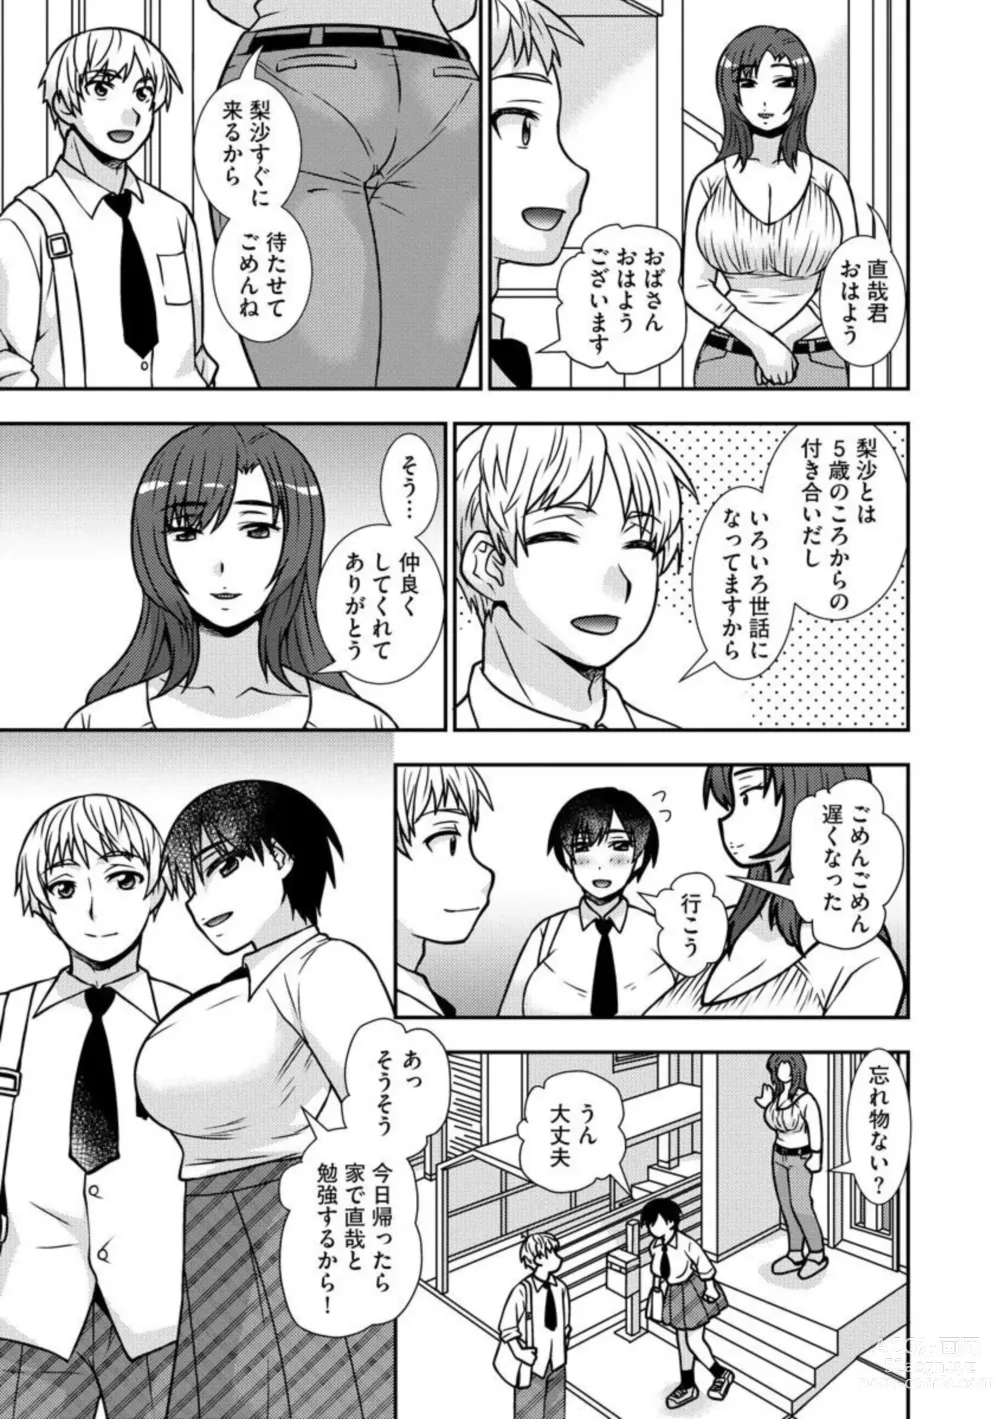 Page 6 of manga Netori Haha Musume no Kareshi no Are ga Wasurerarenakute 1